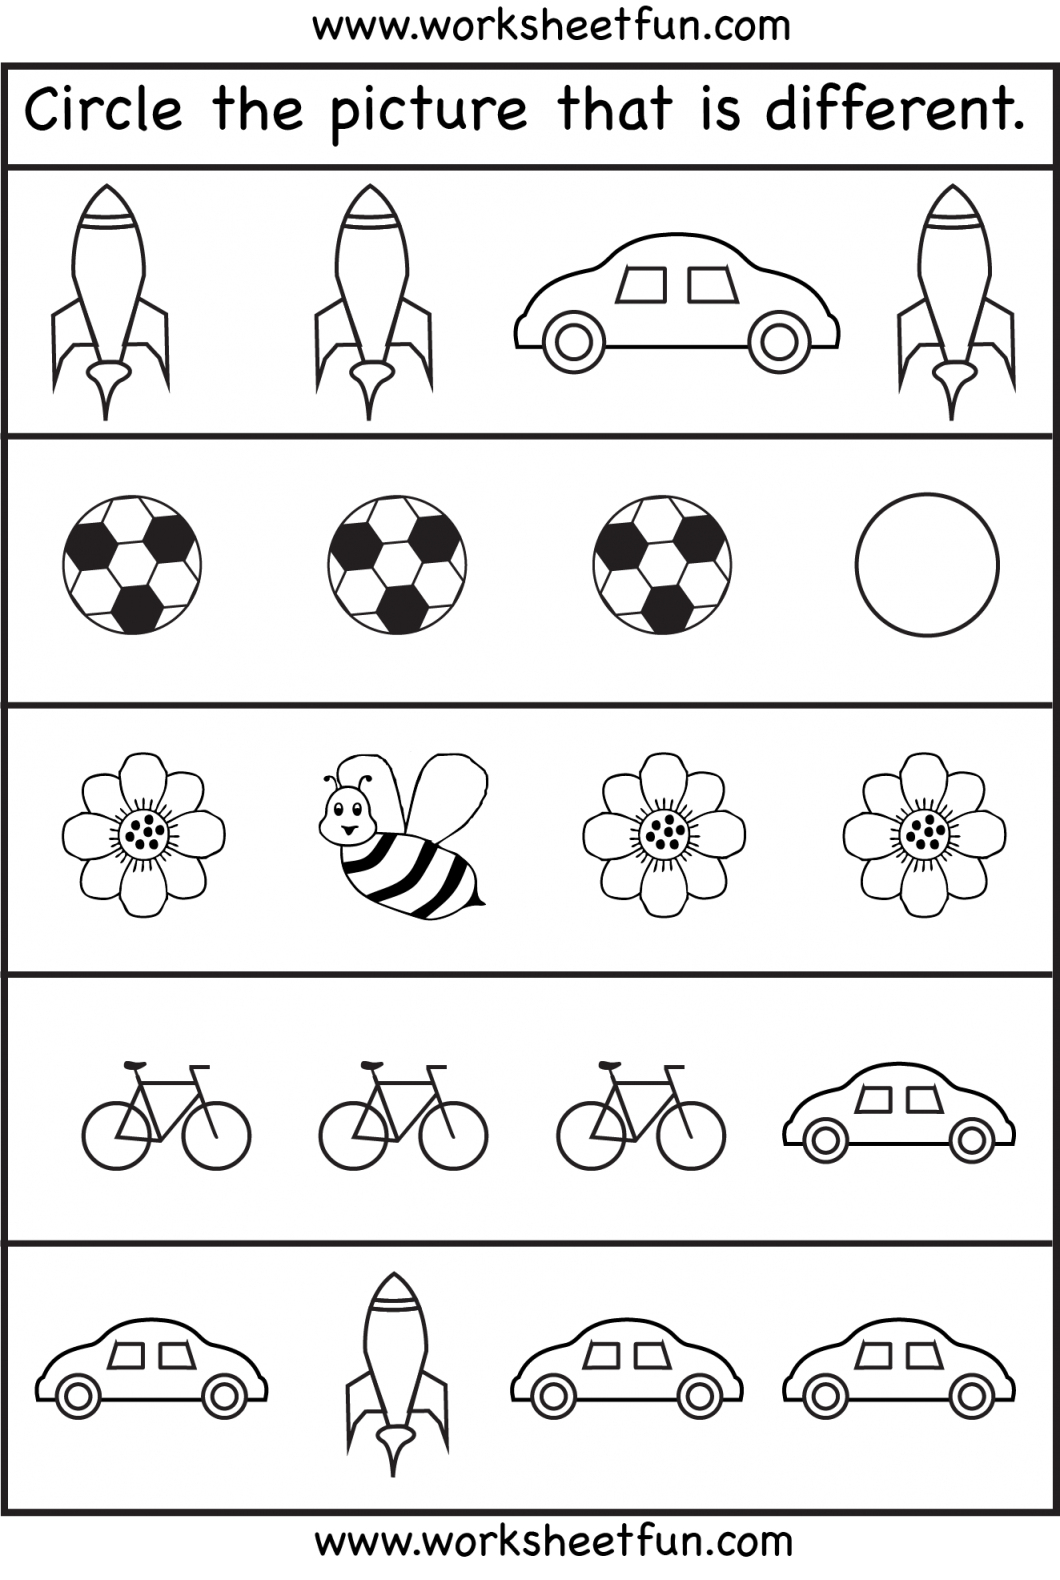 Free Printable Preschool Worksheets Age 3 Printable Worksheets